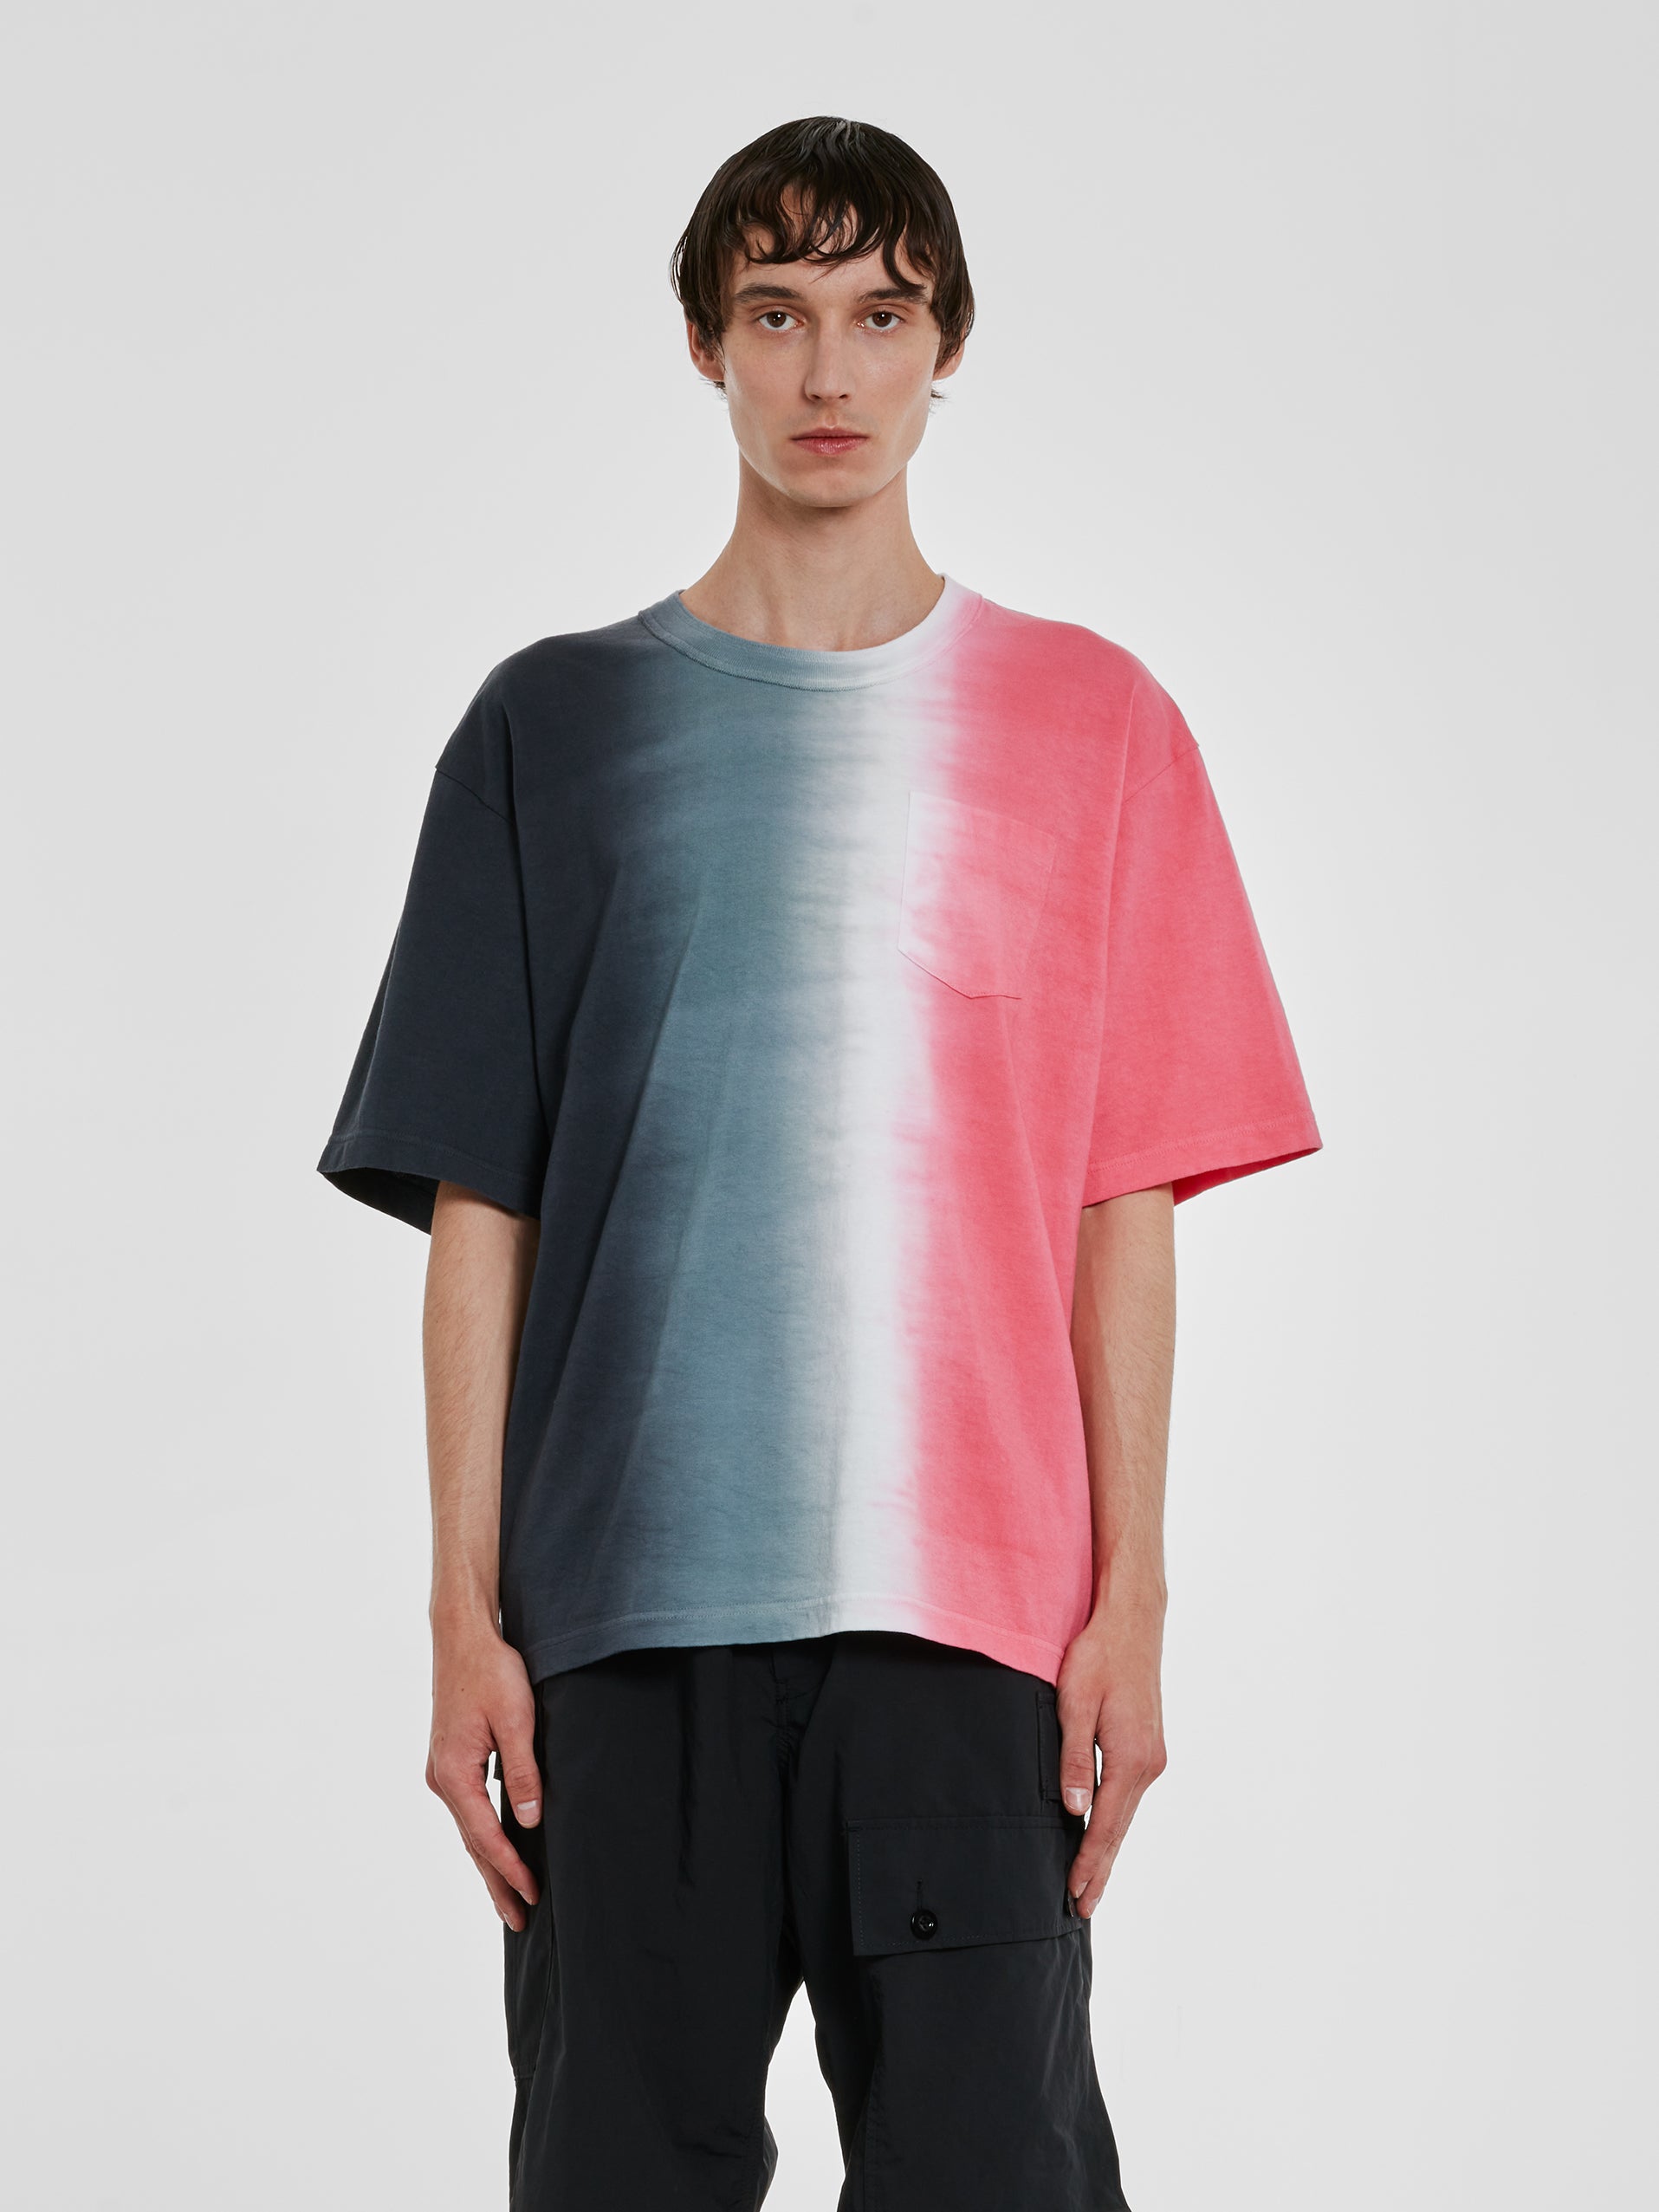 Sacai - Men’s Tie Dye Cotton Jersey T-Shirt - (Multi) view 1